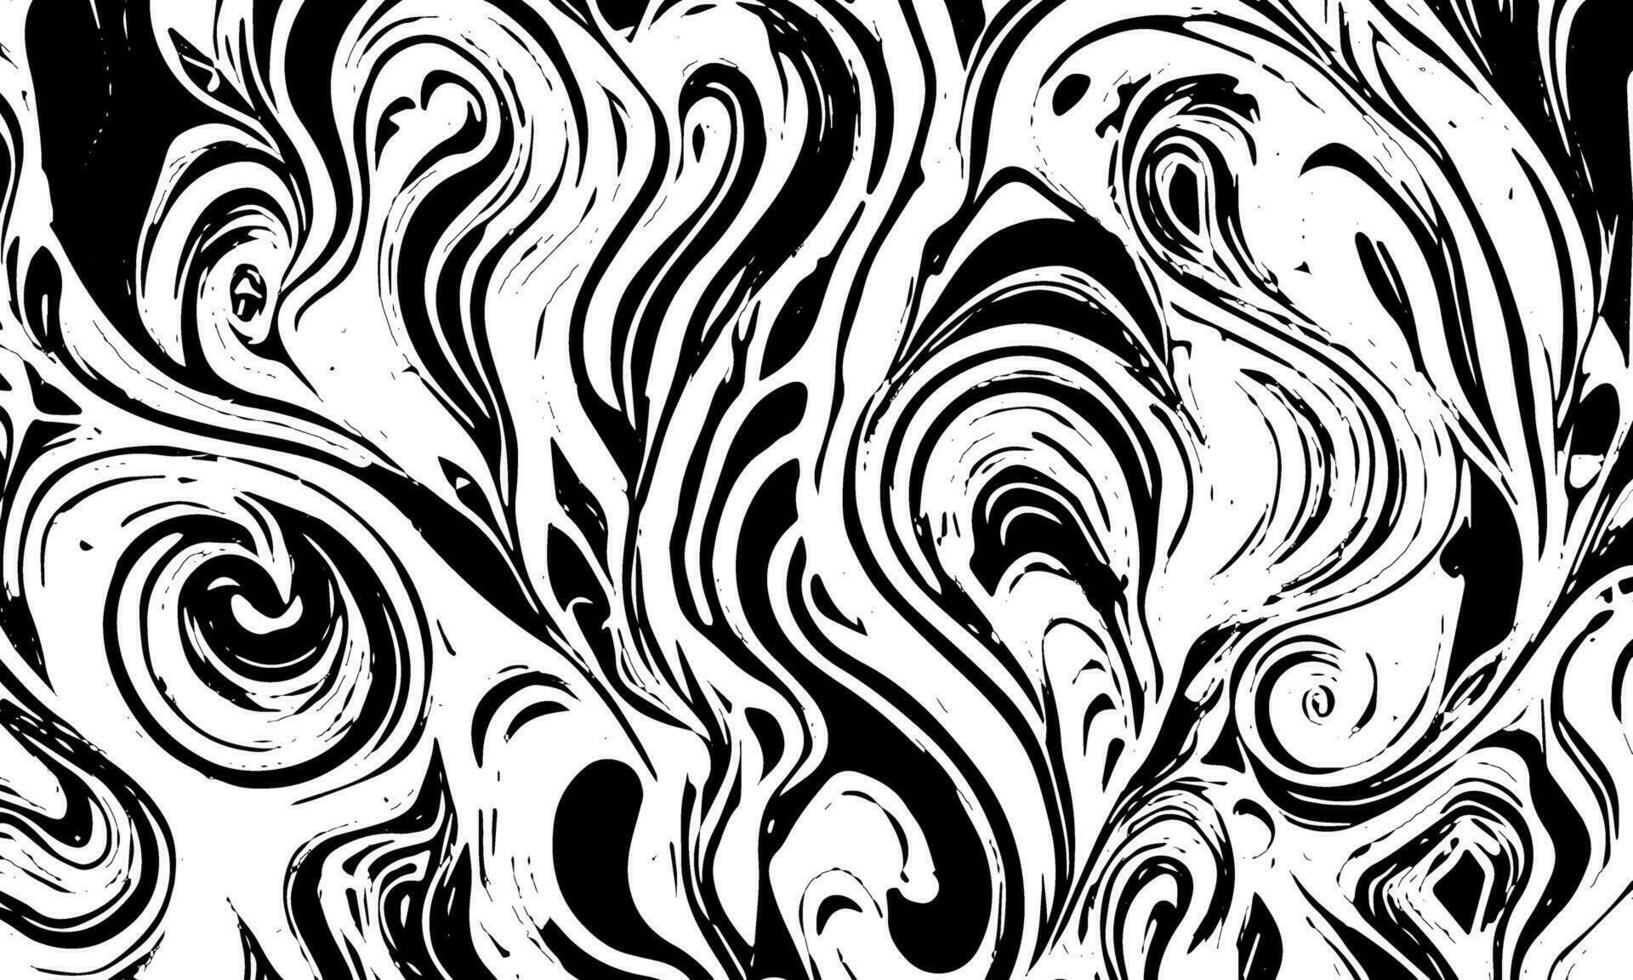 grunge kaotisk detaljerad svart abstrakt textur. vektor bakgrund